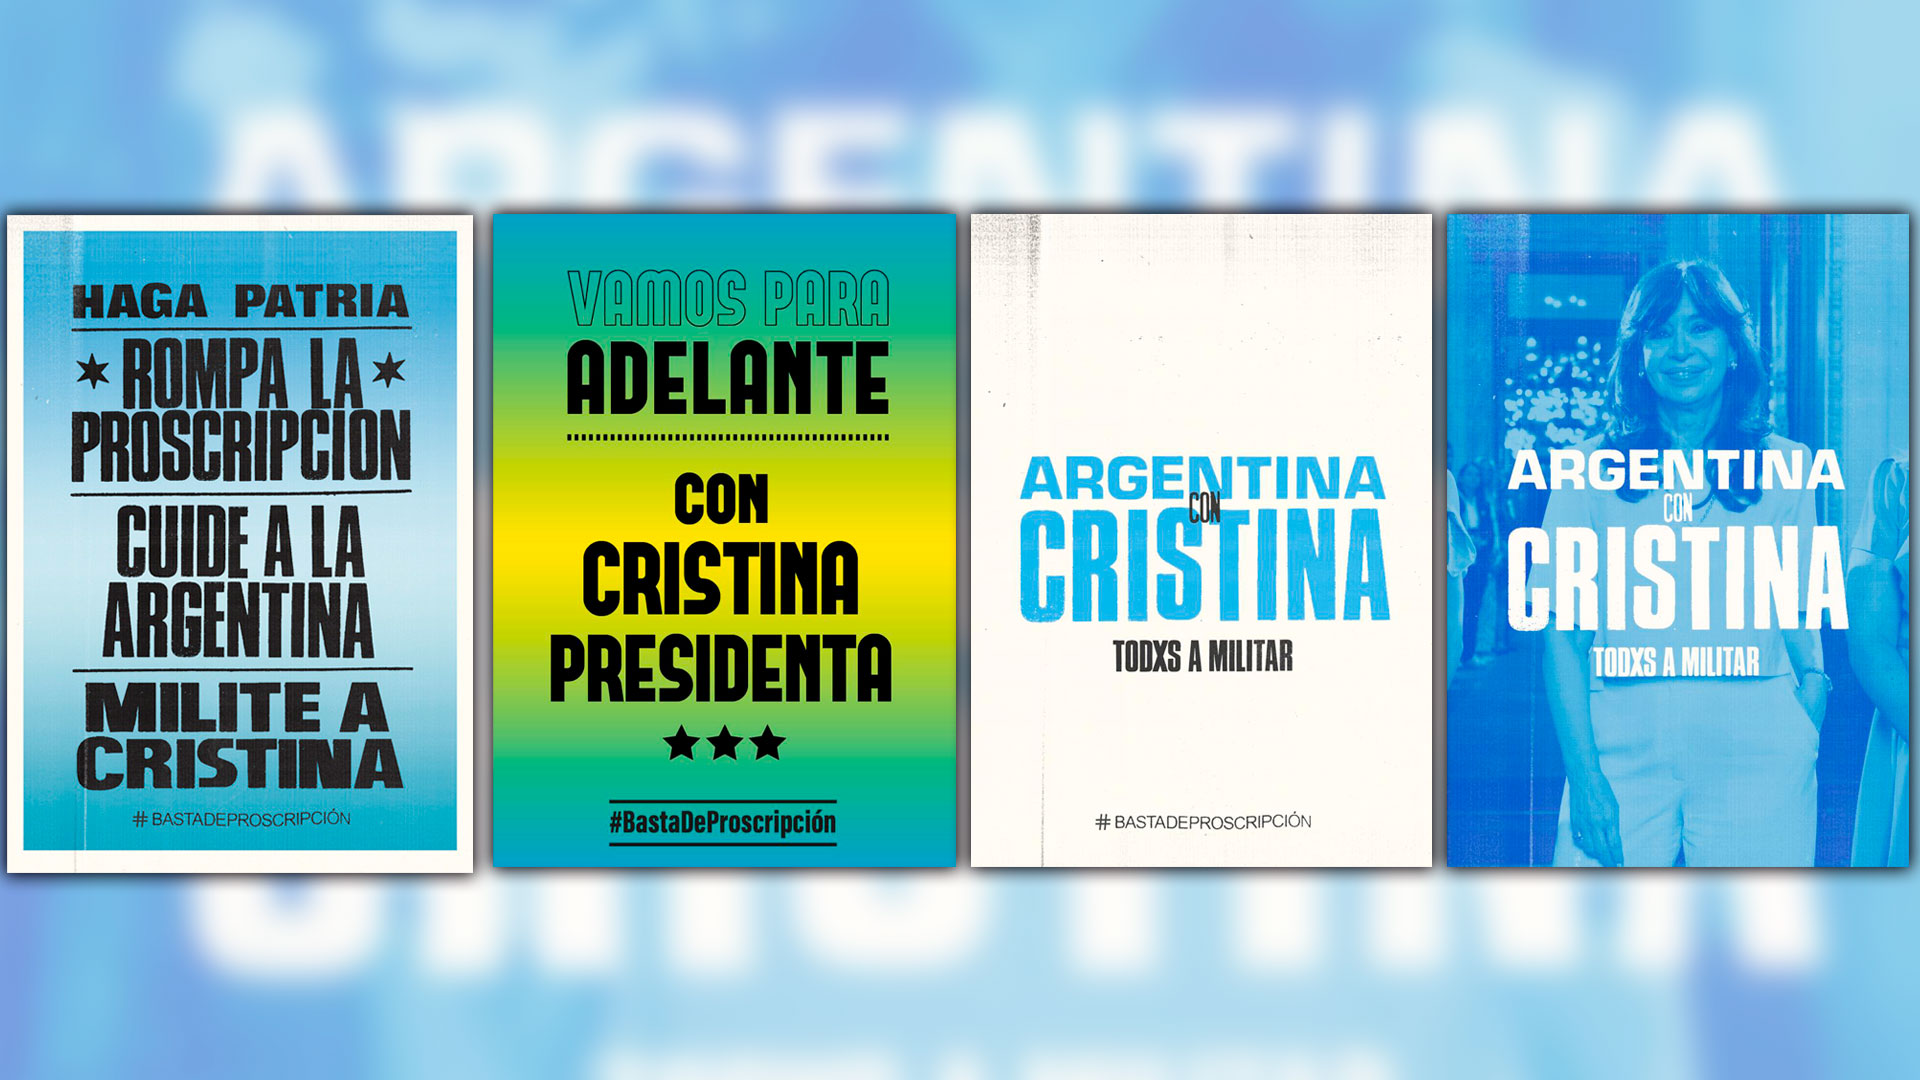 Presidenta. La cartelería para "militar" en apoyo a Cristina Kirchner
